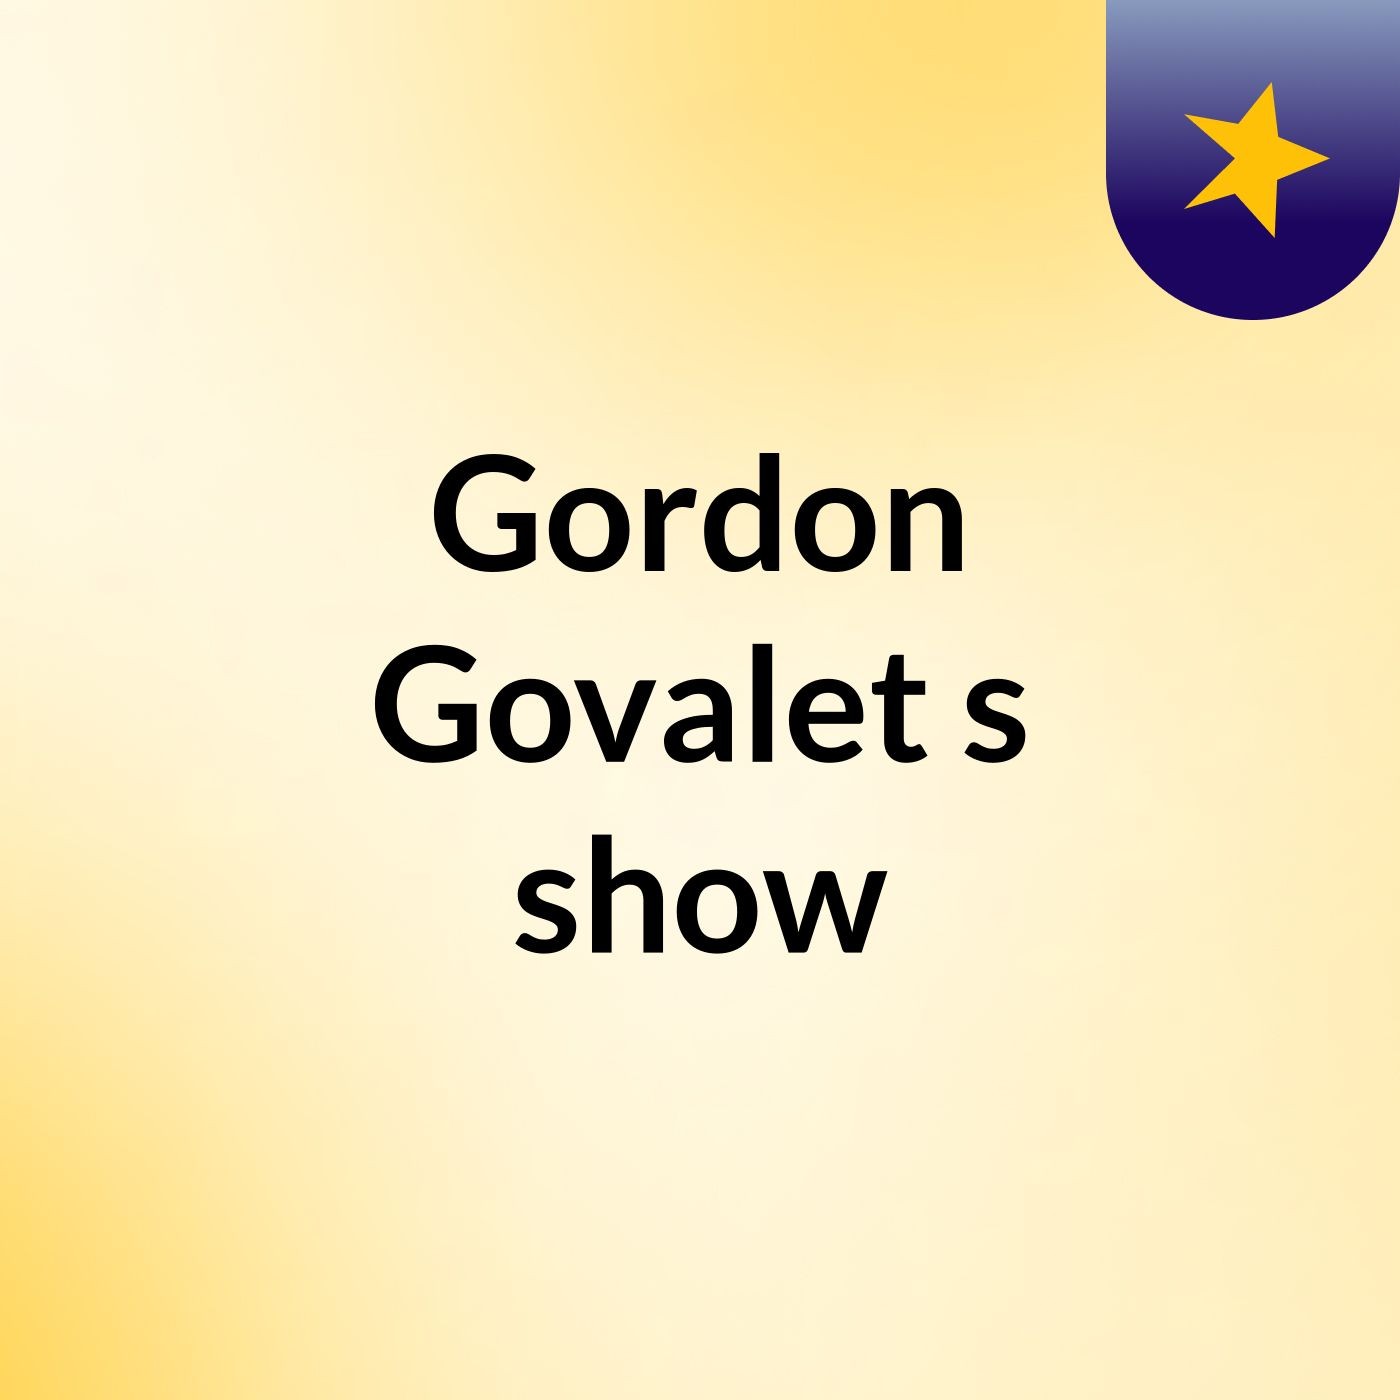 Gordon Govalet's show